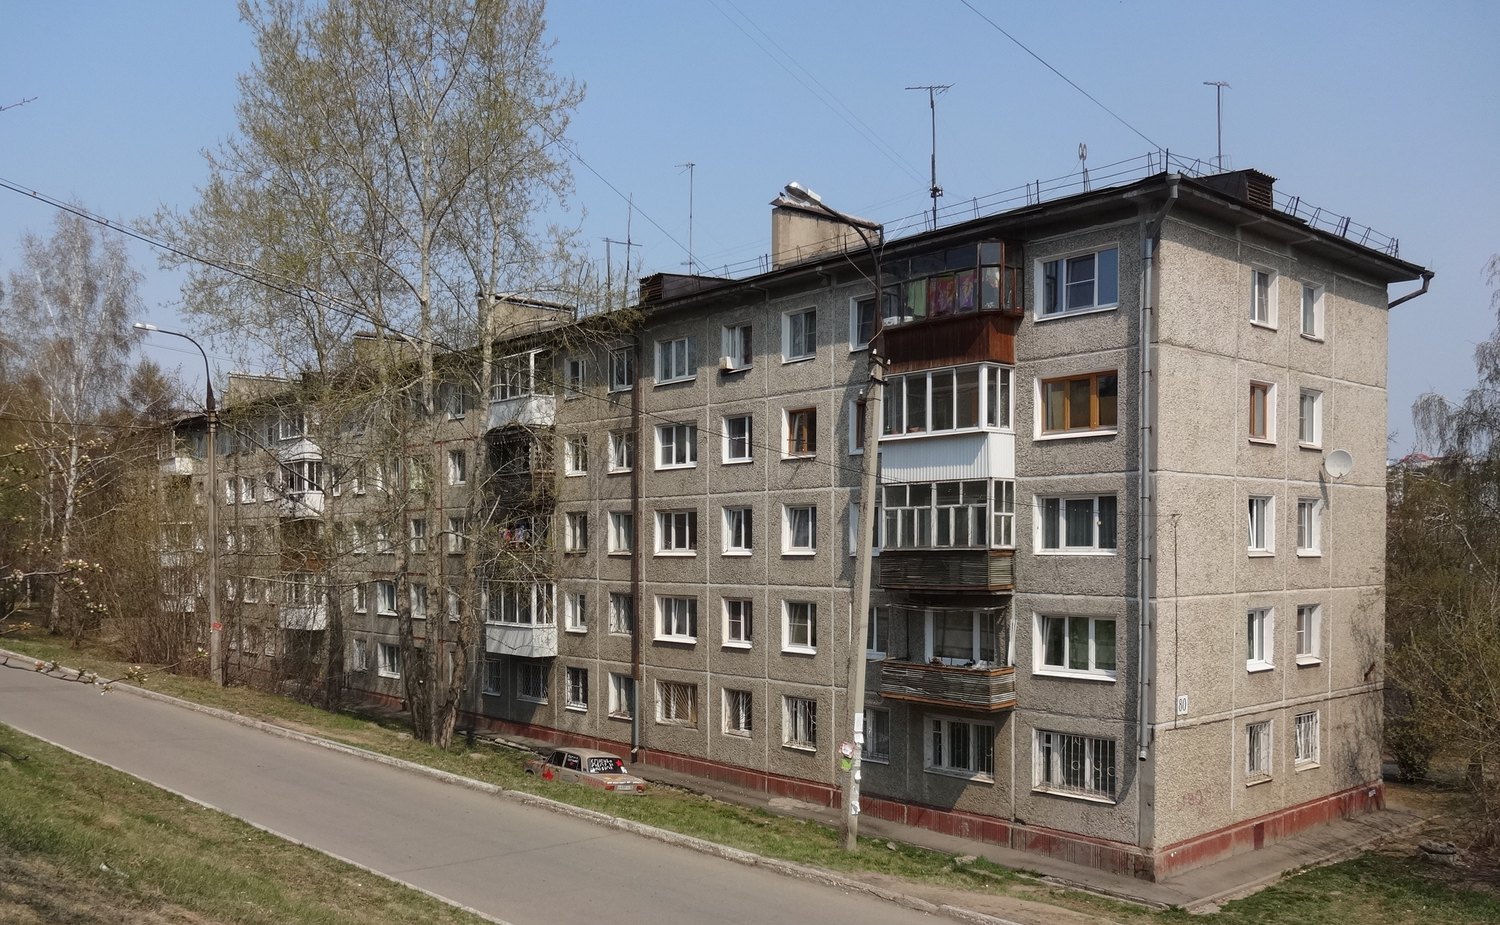 Малыш живет в квартире 41 пятиэтажного дома. Хрущевка 1 335 Иркутск. Хрущевка 1-335 крыша. Пятиэтажки панельные 1-335.